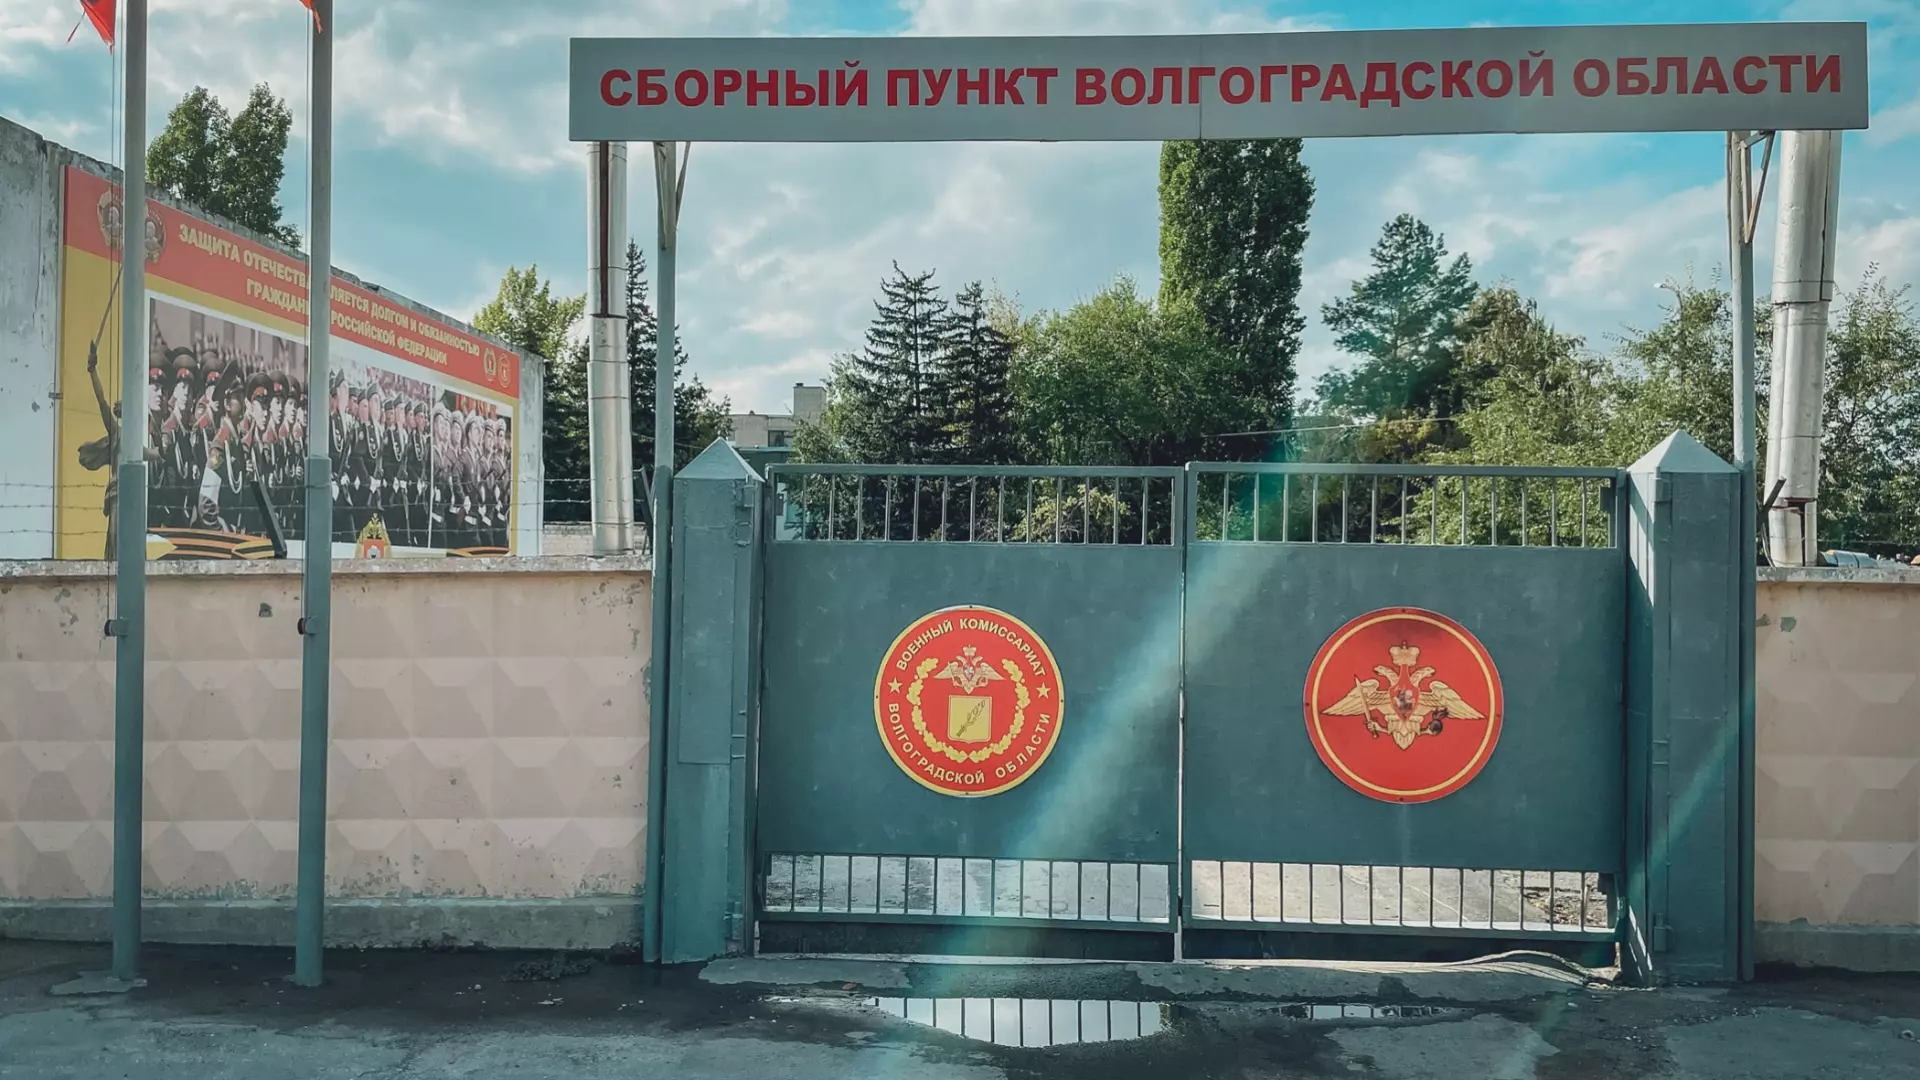 Призывники осенью получат бумажные повестки в Волгограде